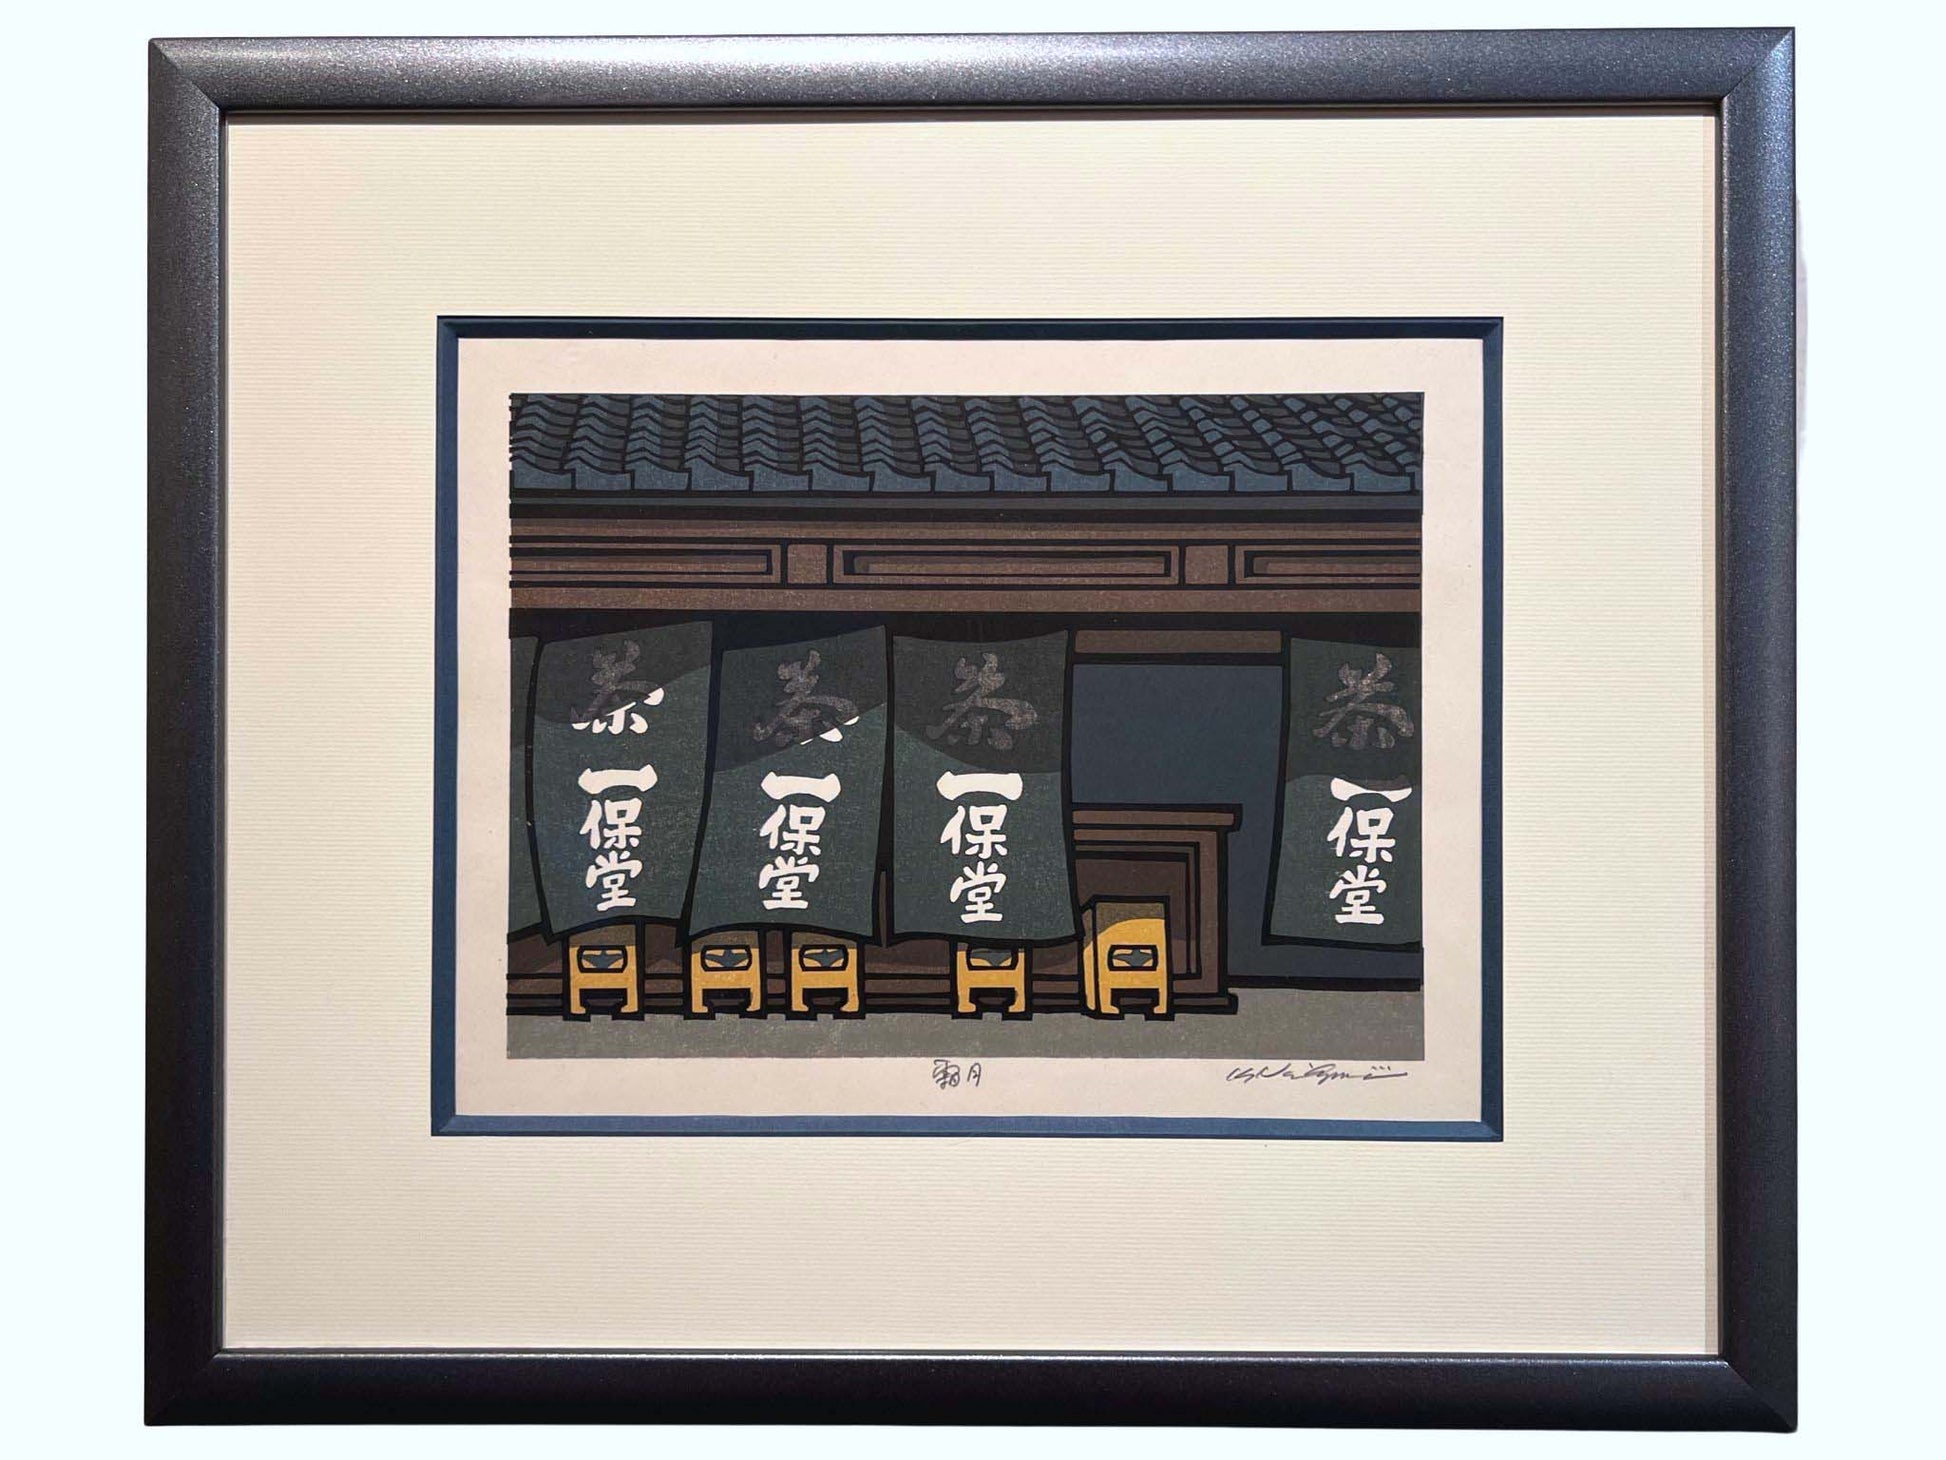 estampe japonaise contemporaine encadrée de Nishijima, une entrée de restaurant avec noren table et tabouret, cadre gris bitume satiné